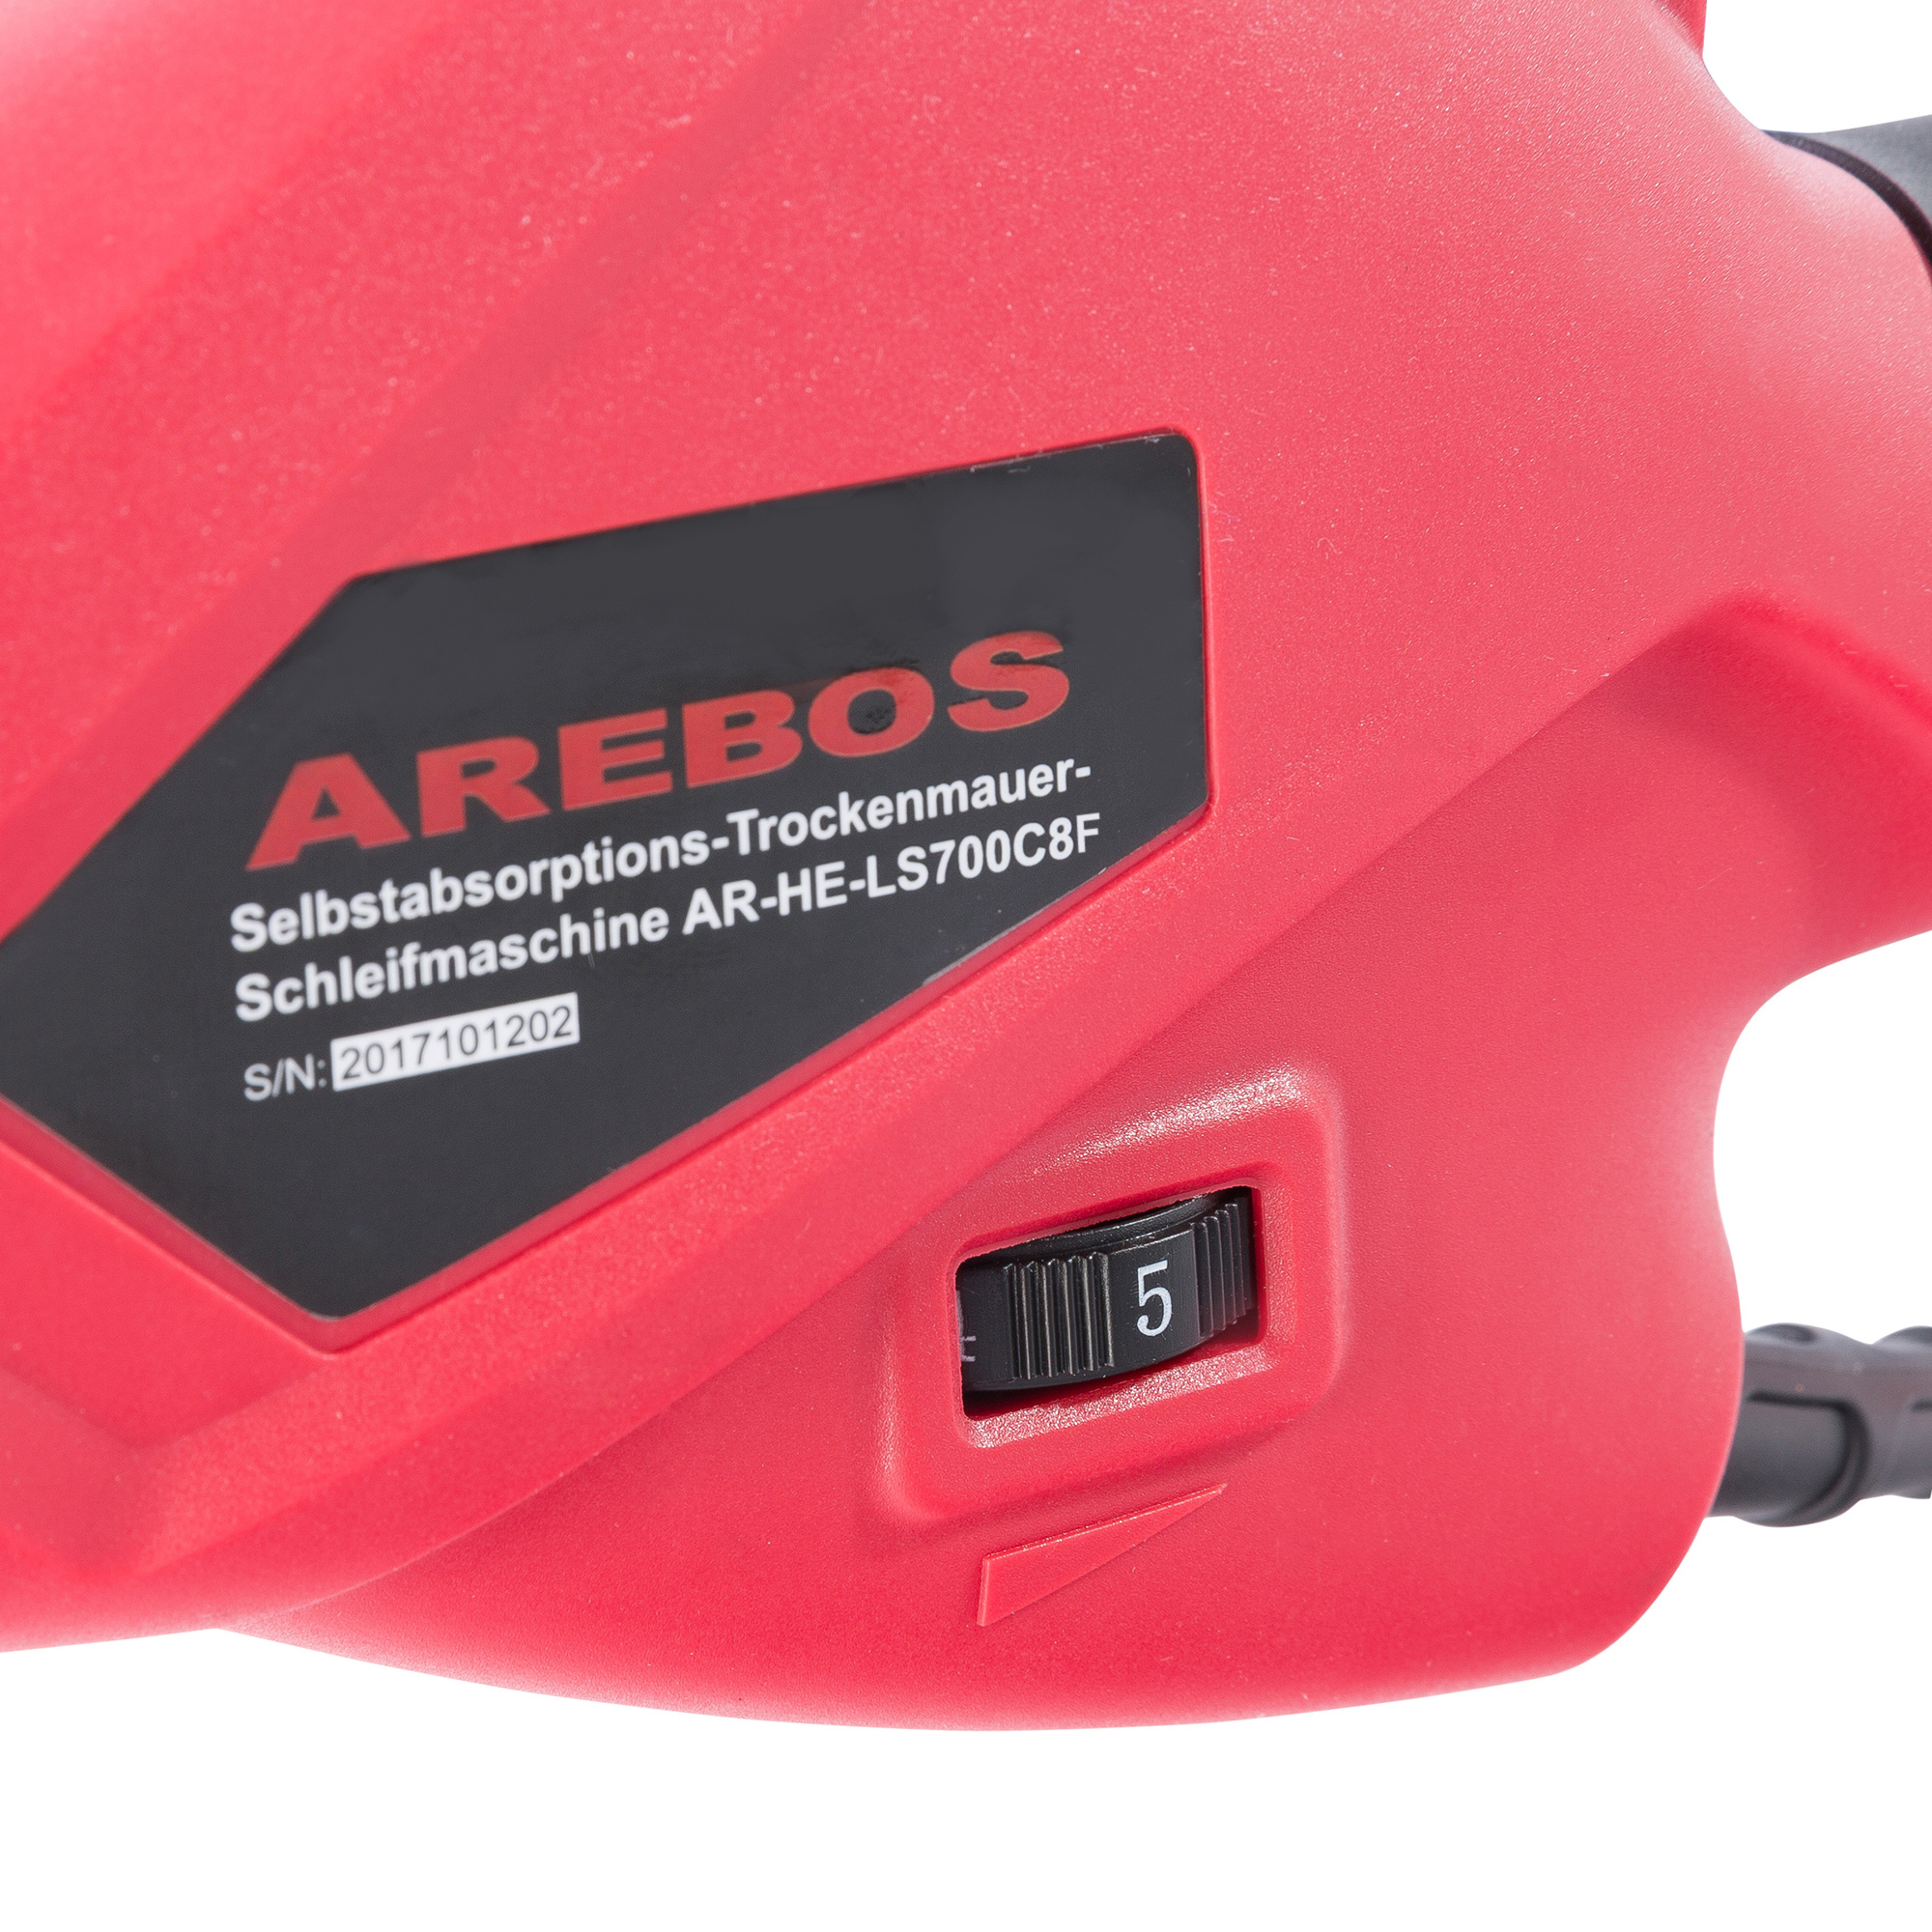 AREBOS Standard Drehzahlregelung, Teleskopstange Absaugsystem Langhalsschleifer